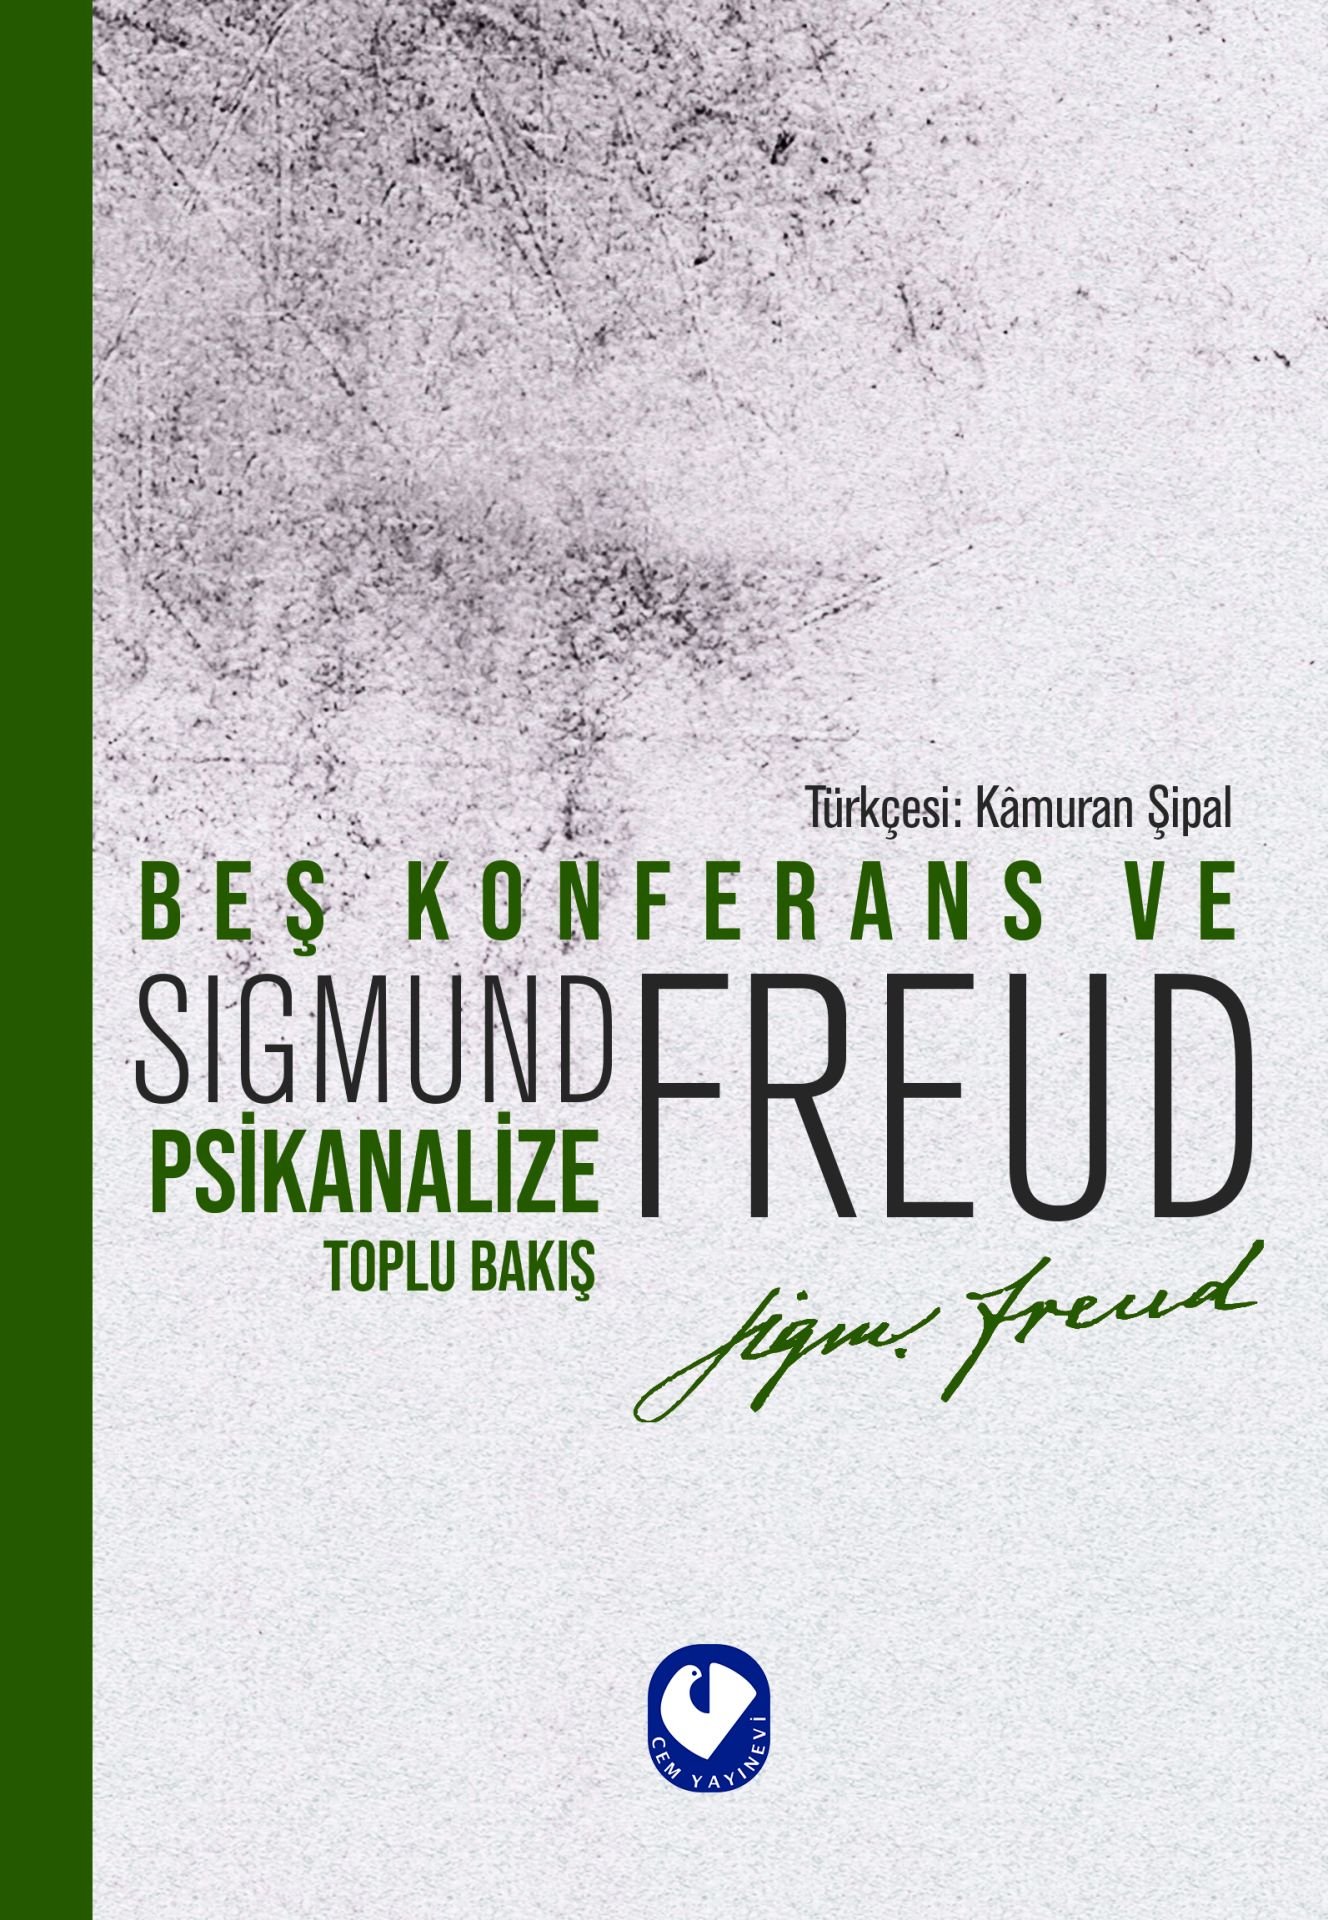 Beş Konferans Ve Psikanalize Toplu Bakış | Sigmund Freud